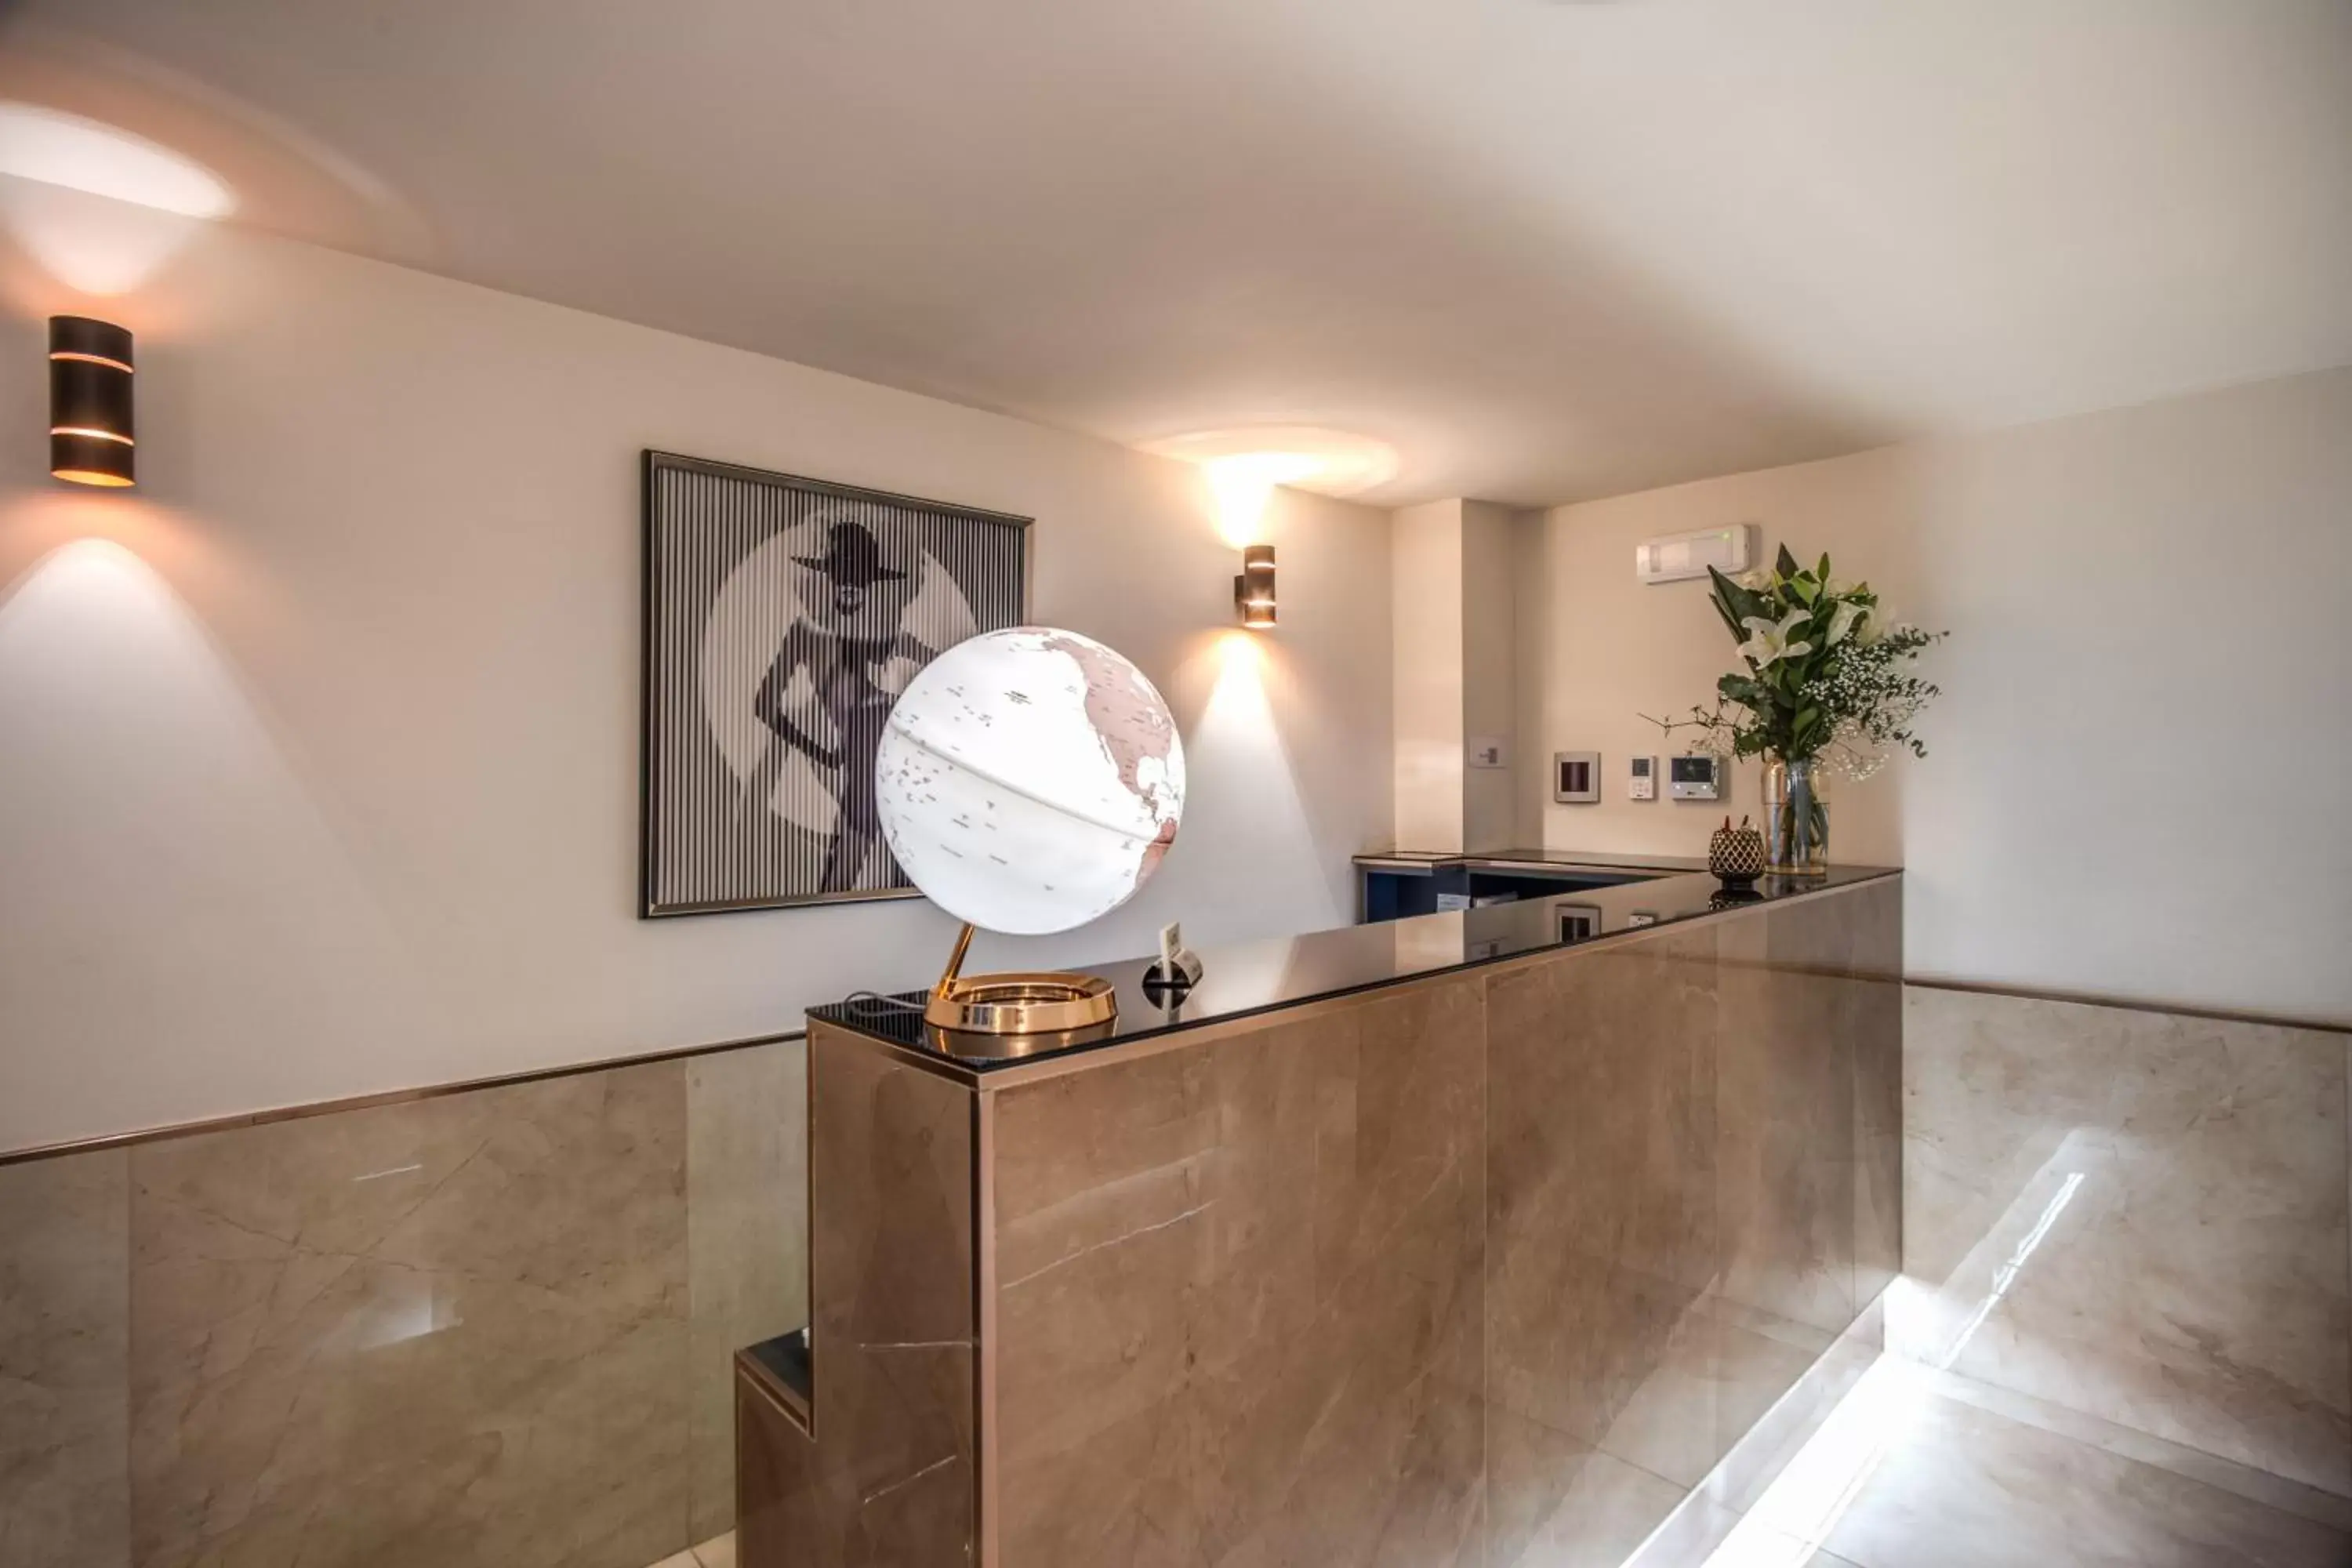 Lobby or reception, Bathroom in Hotel San Silvestro